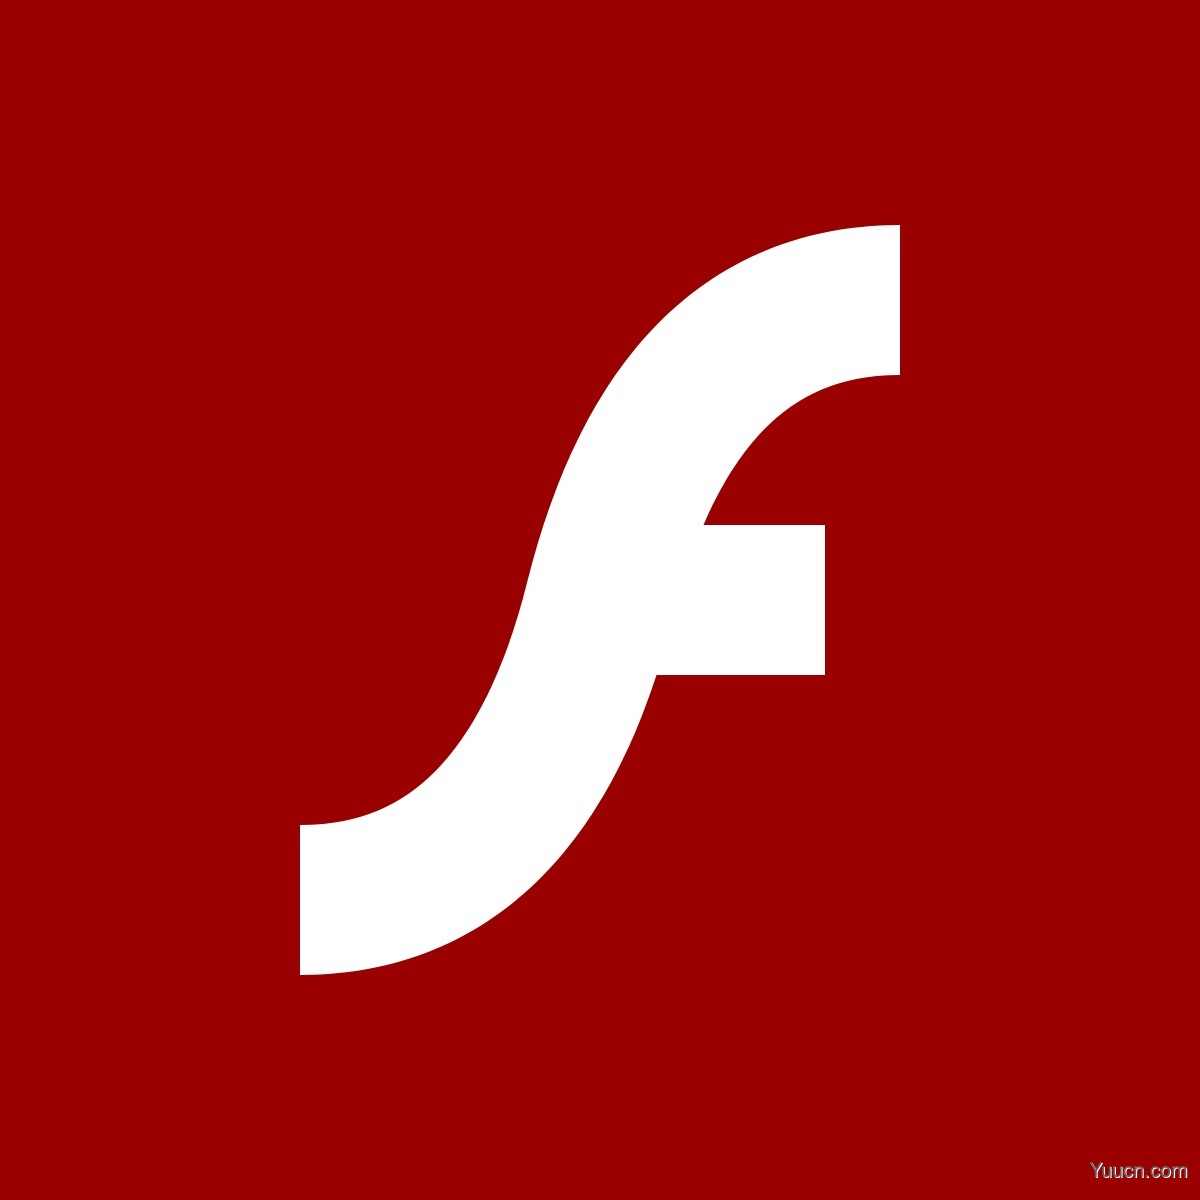 Win10 21H1将删除Flash Player 7月将通过星期二补丁彻底删除